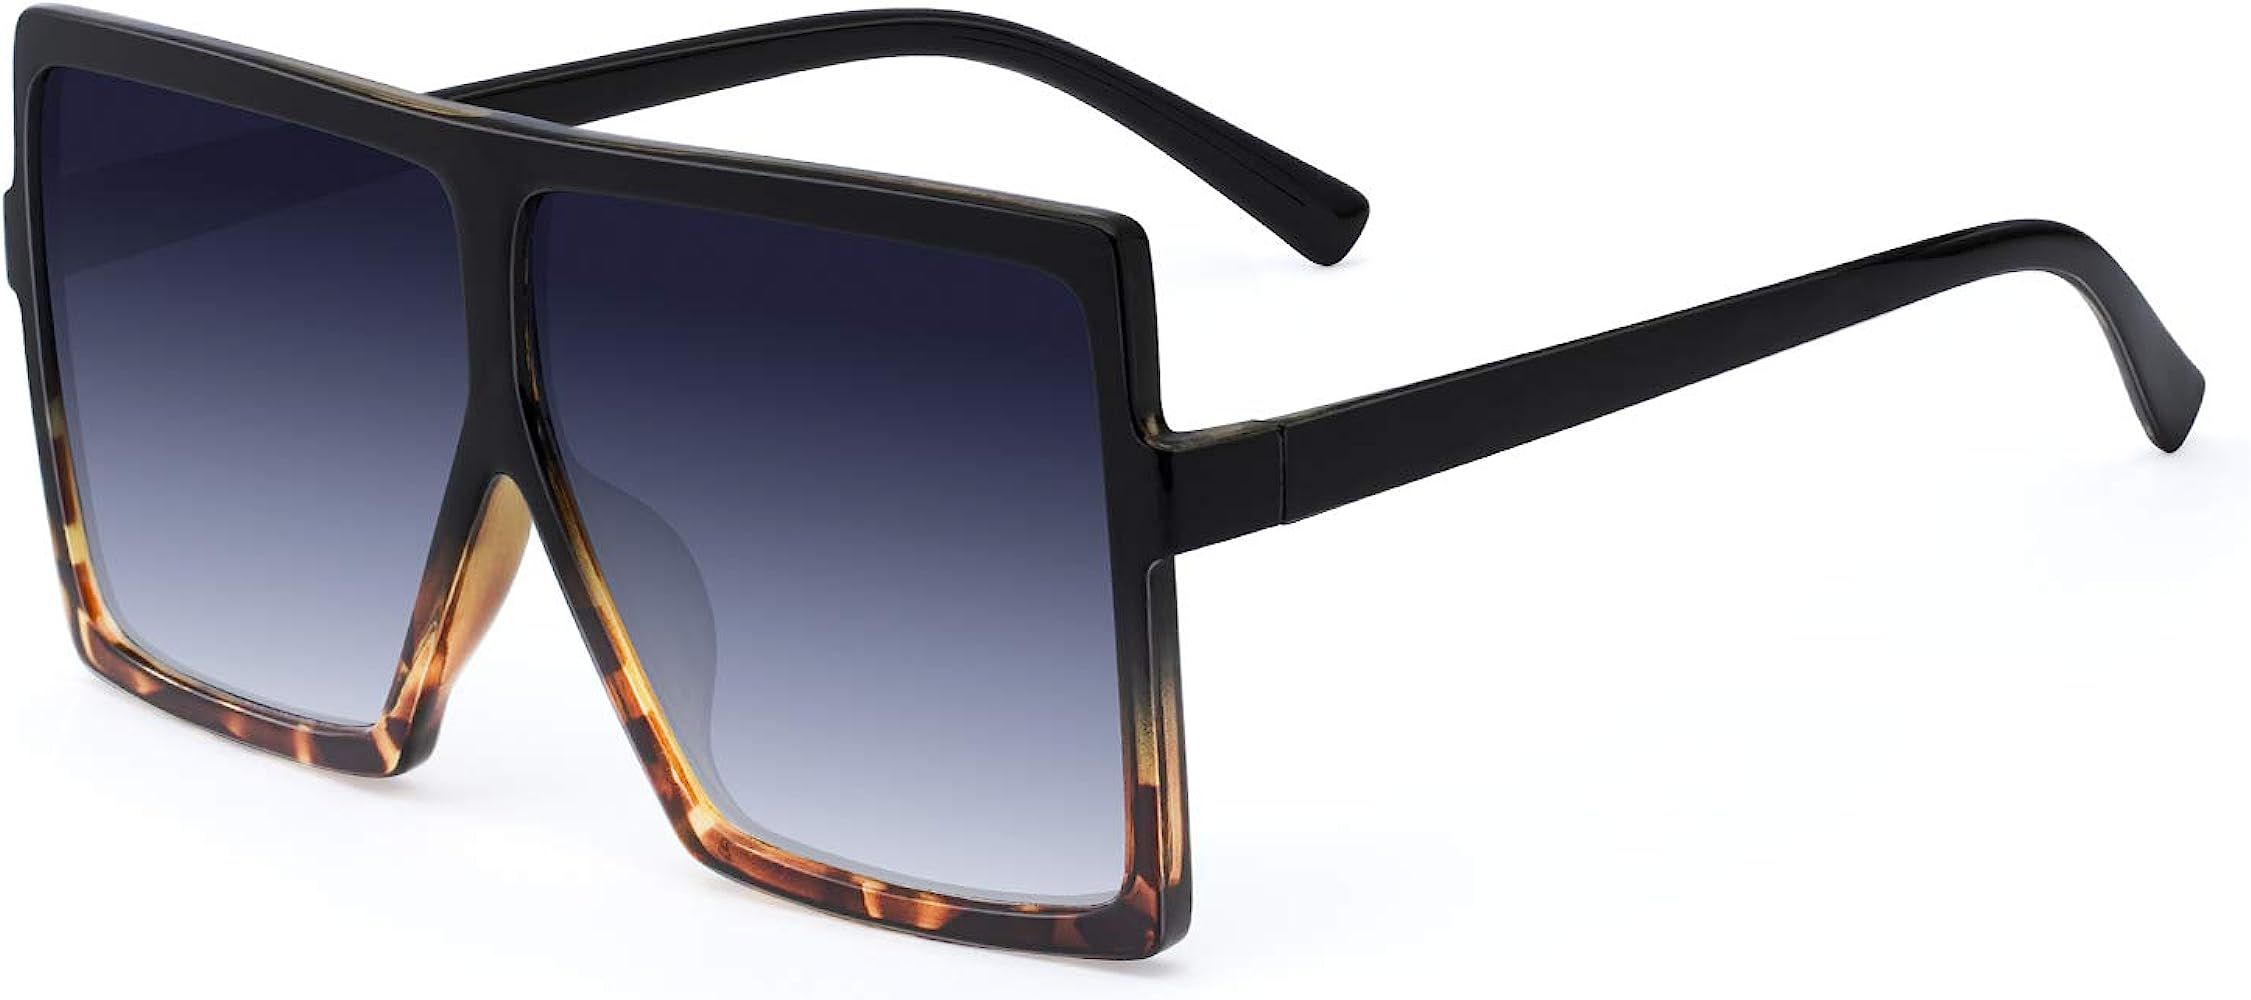 Square Oversized Sunglasses For Women - FEIDU Trendy Fashion Sunglasses For Women Men Celebrity/ ... | Amazon (US)